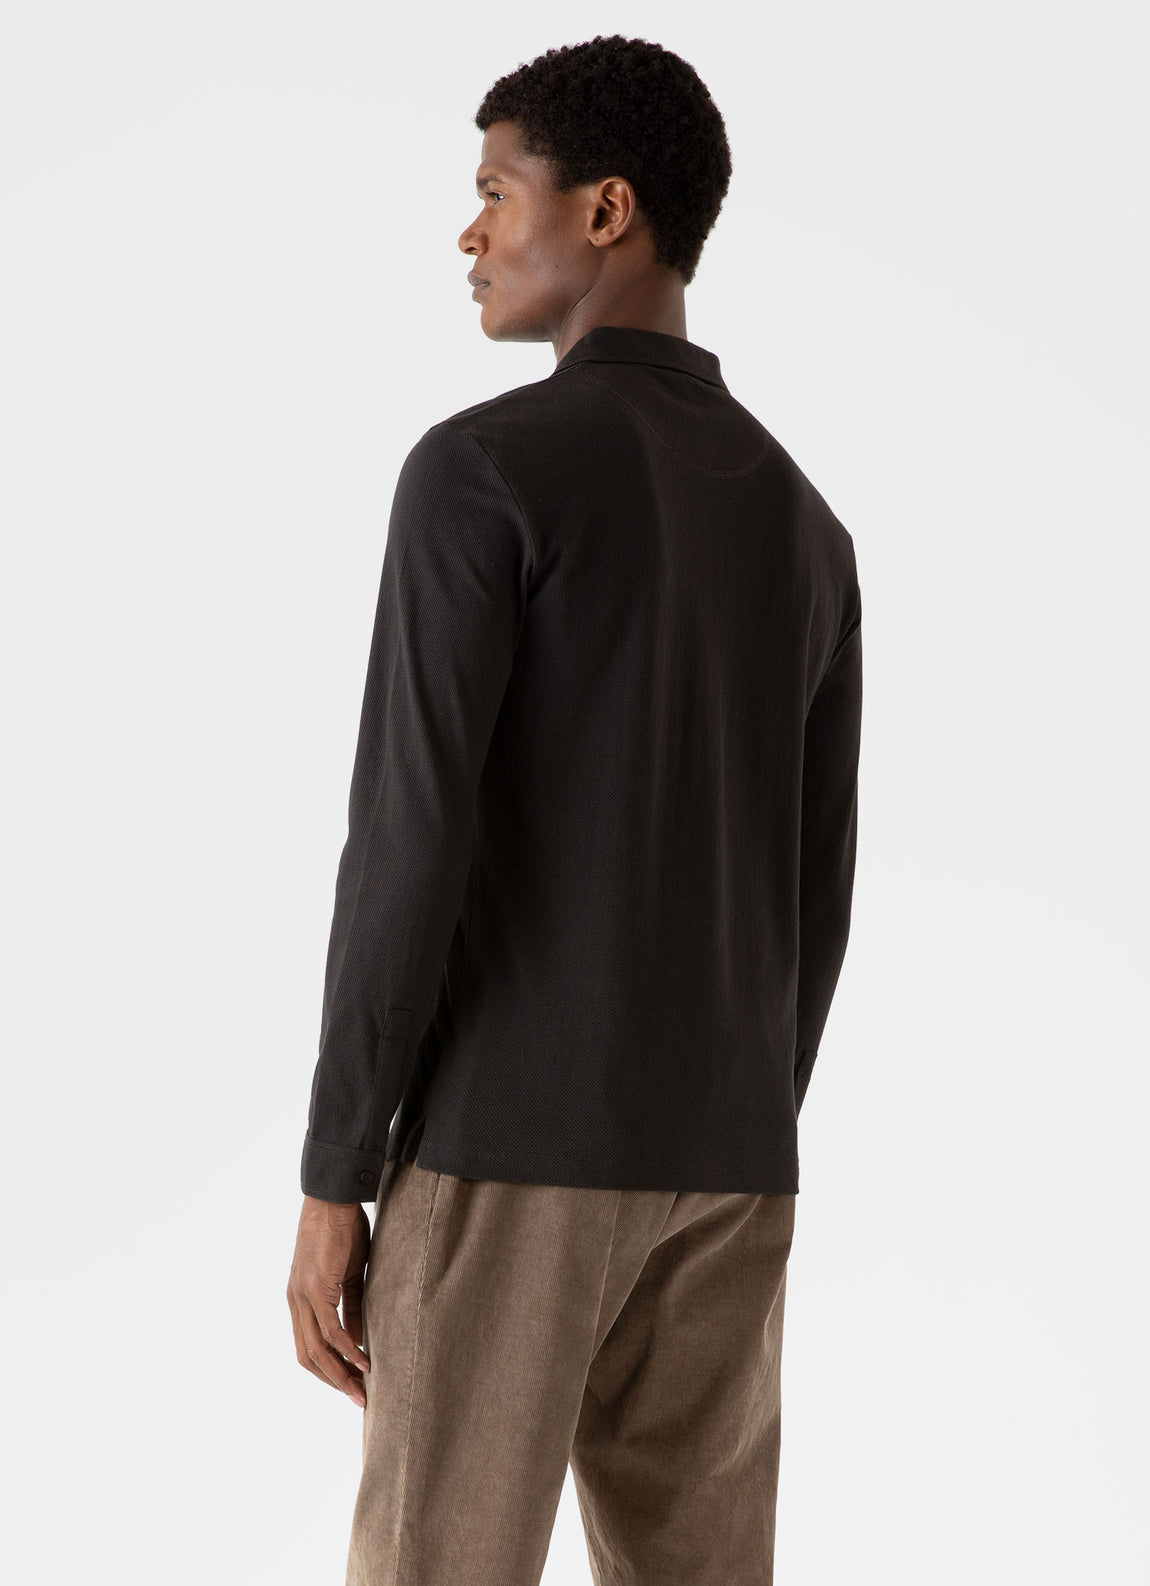 Men's Long Sleeve Riviera Polo Shirt in Coffee | Sunspel